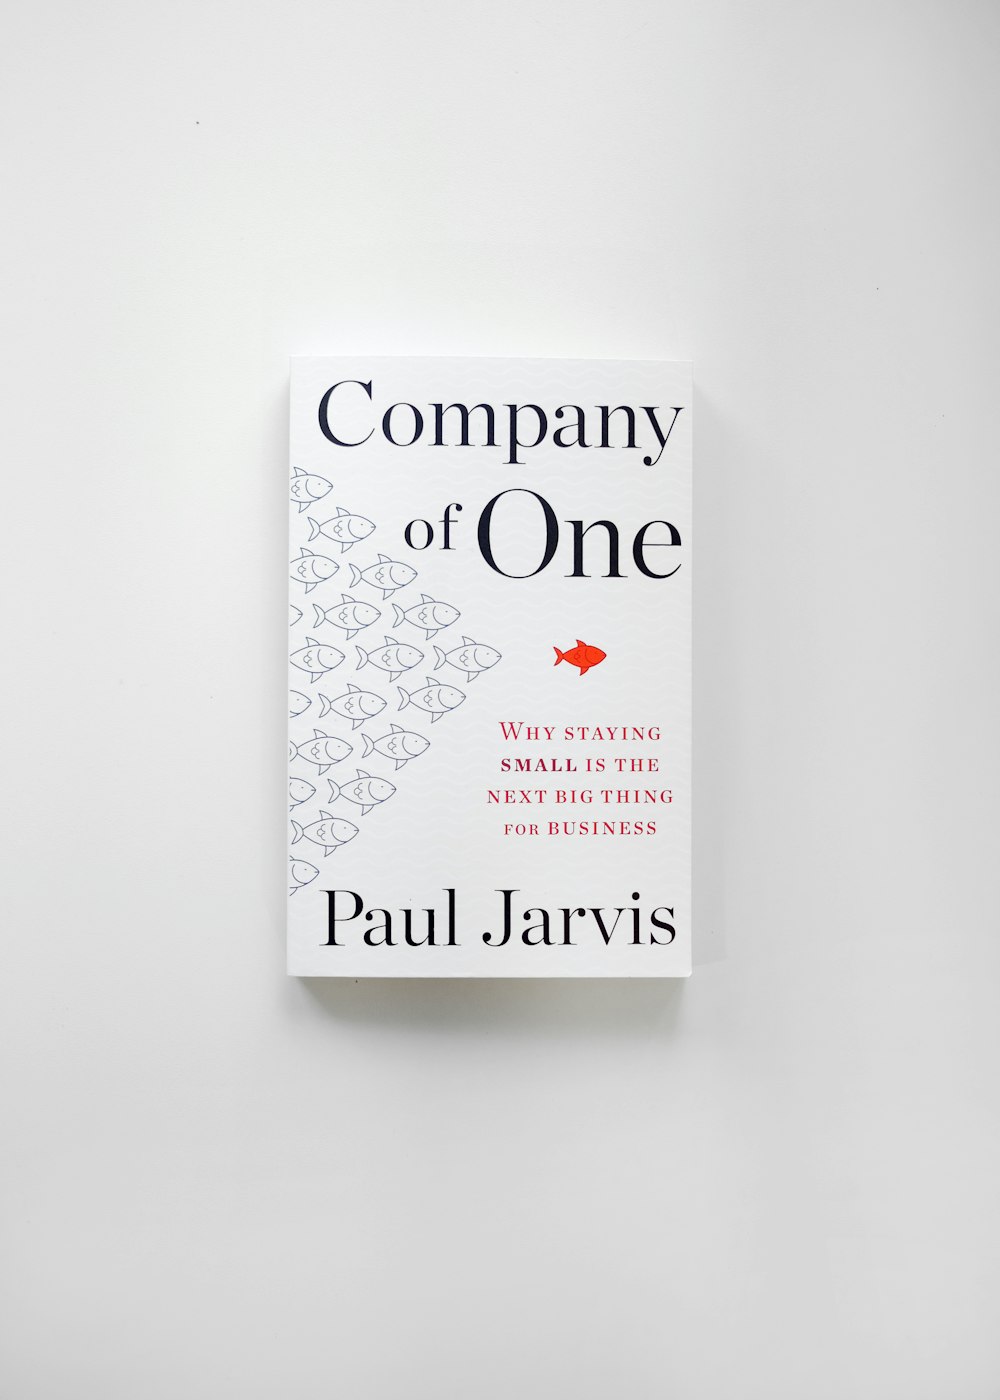 Una copia de The Book Company of One de Paul Jarviss